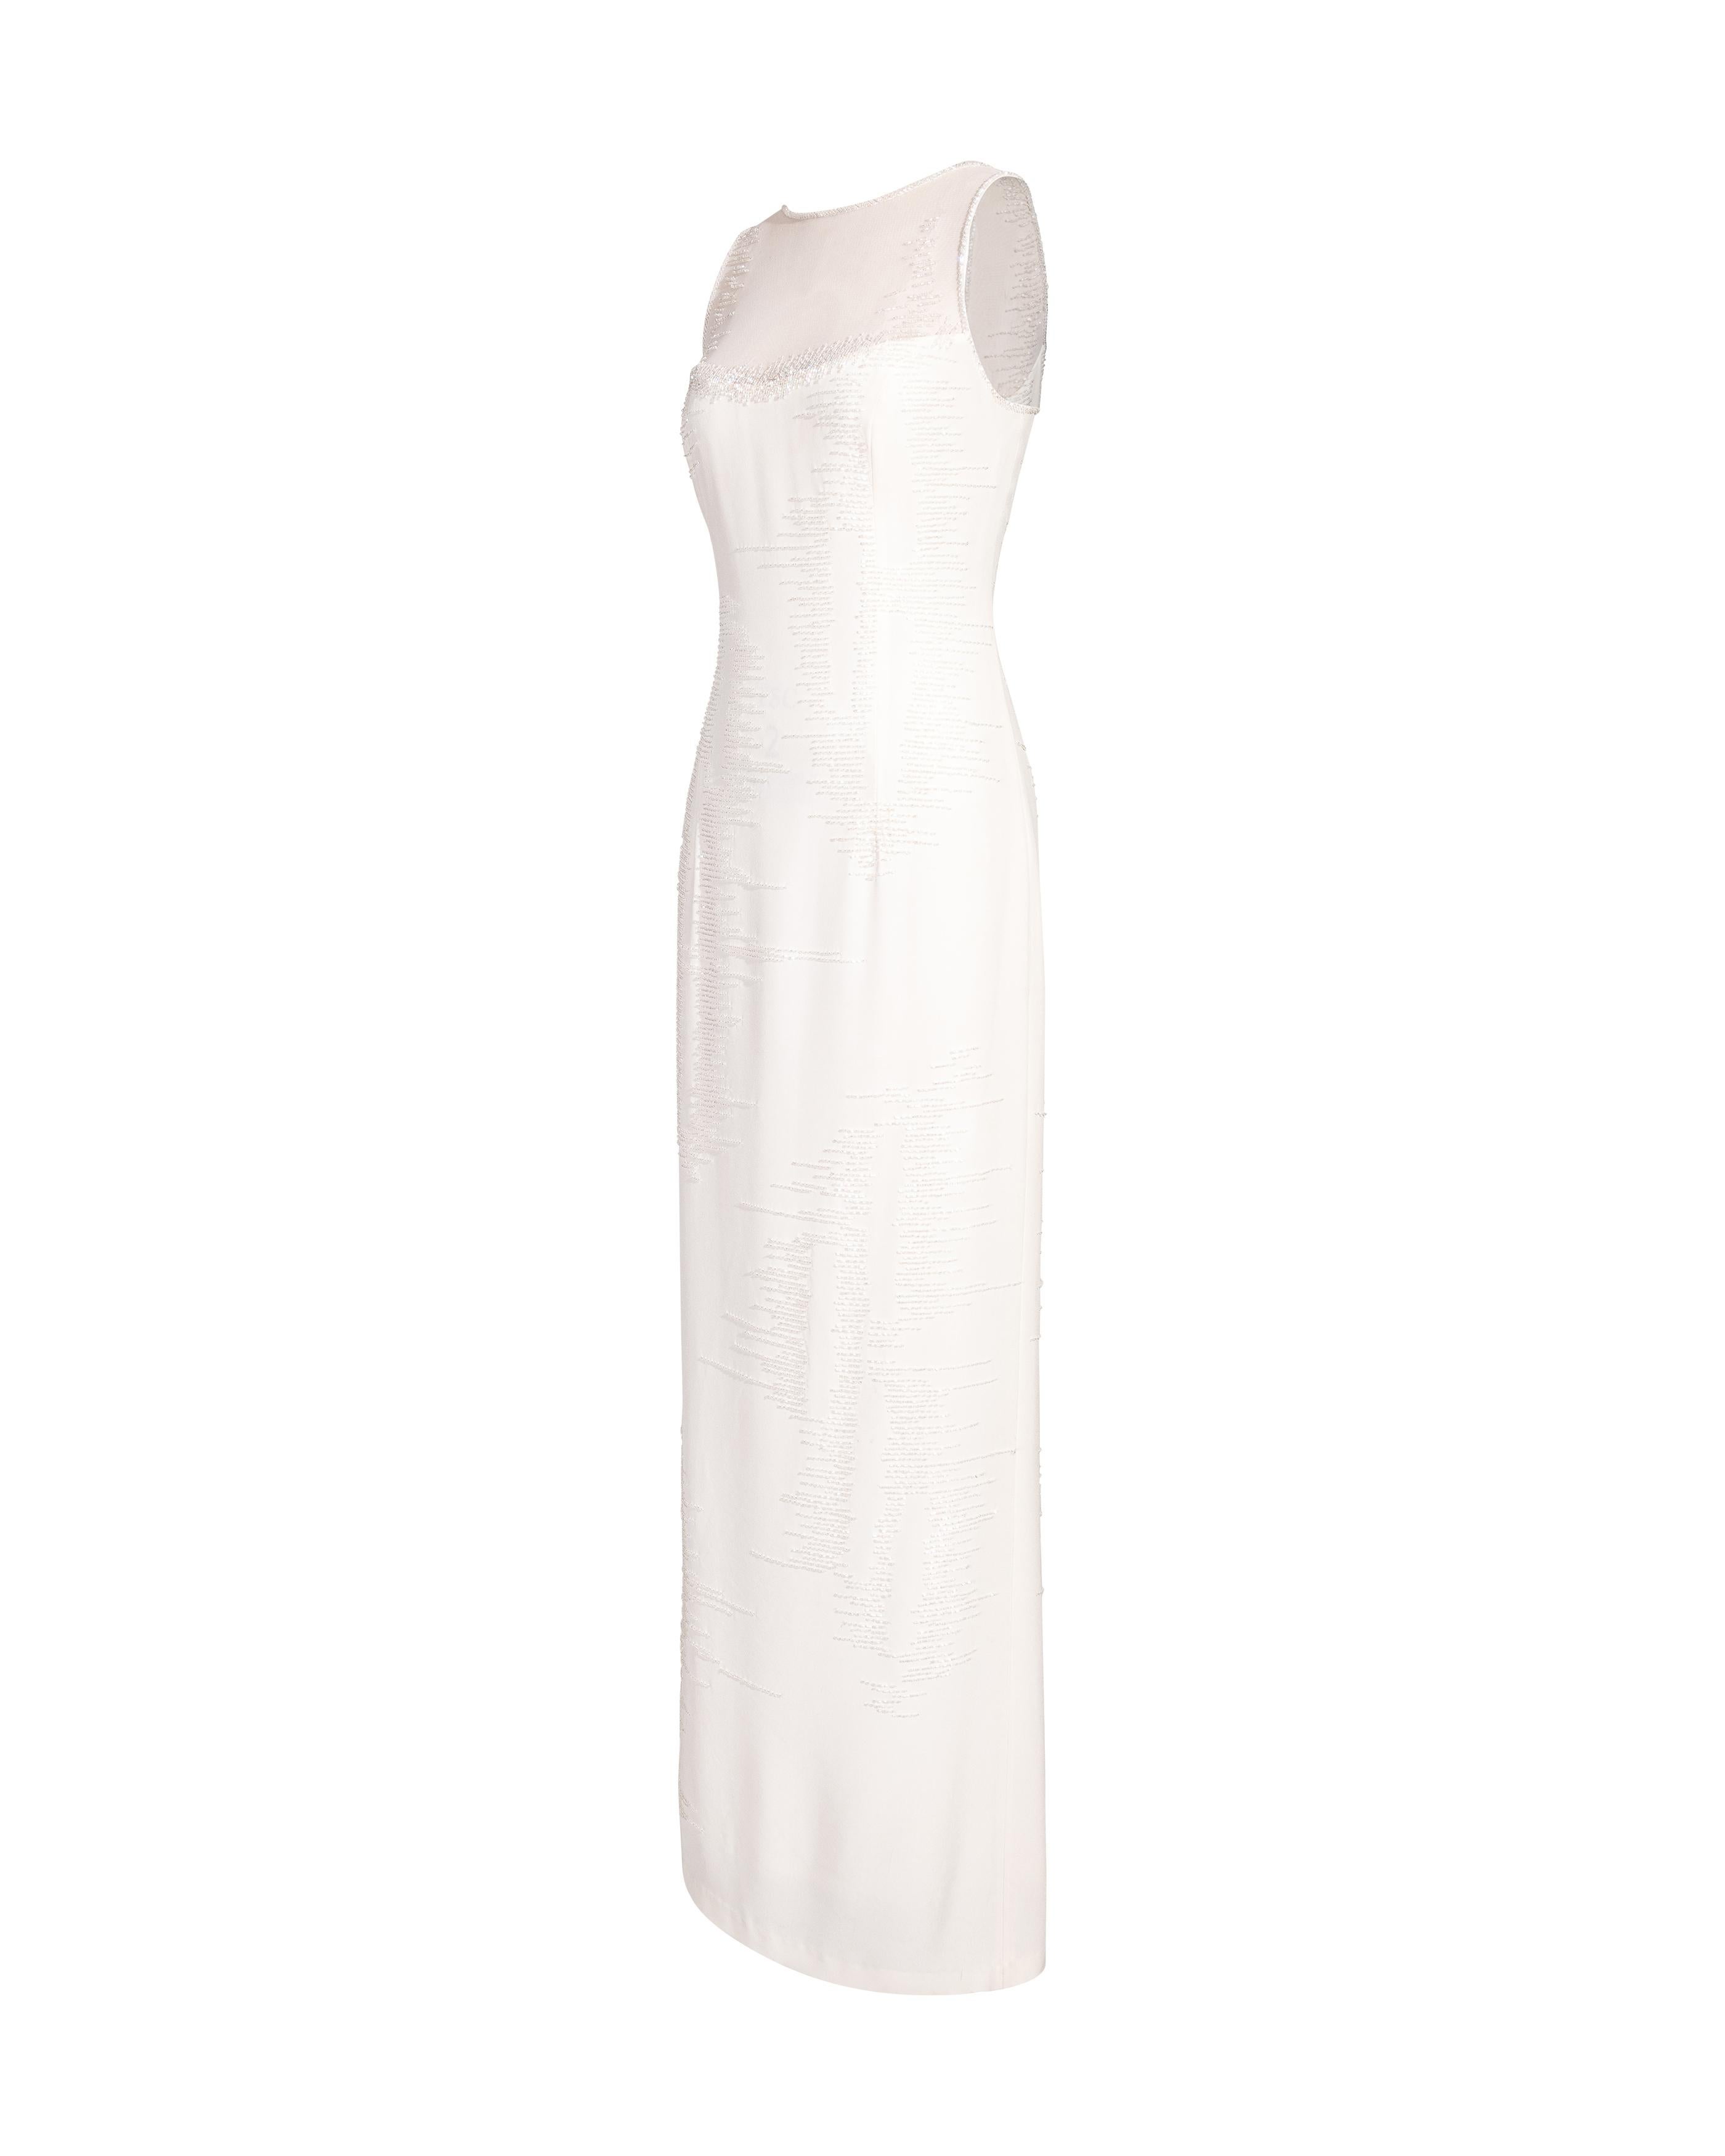 Robe sans manches Bob Mackie des années 1980, de couleur ivoire et ornée de motifs. Robe blanche sans manches avec garniture perlée et motif de rayures rayonnantes perlées sur l'ensemble de la robe. Dessus et dos en maille blanche semi-transparente.